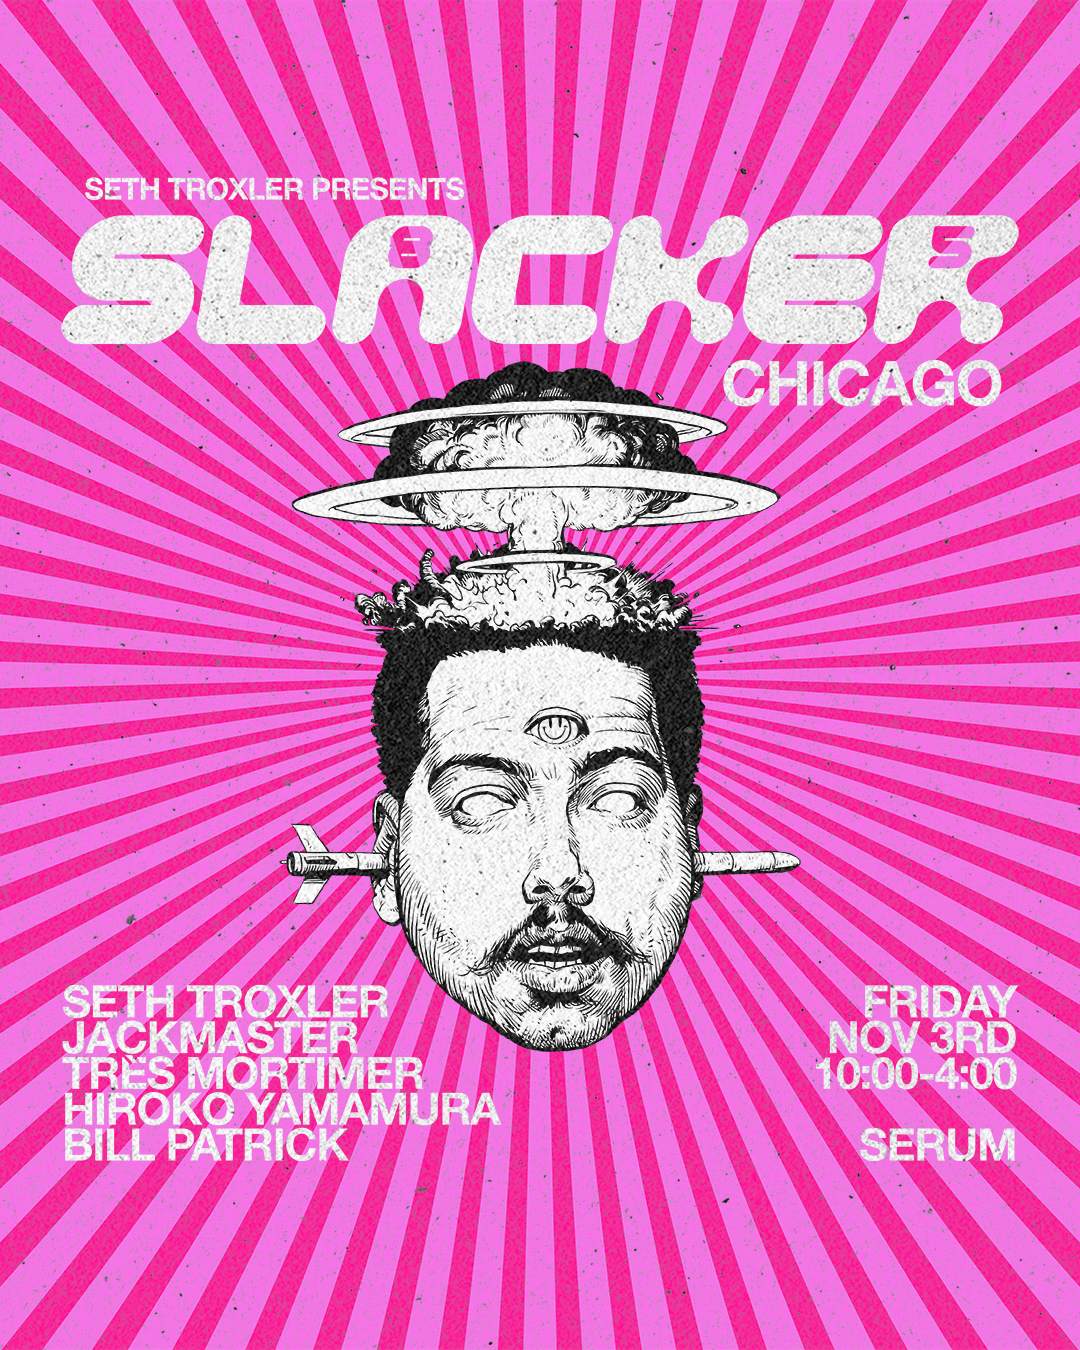 Serum 034: Seth Troxler presents Slacker85 Chicago - フライヤー表